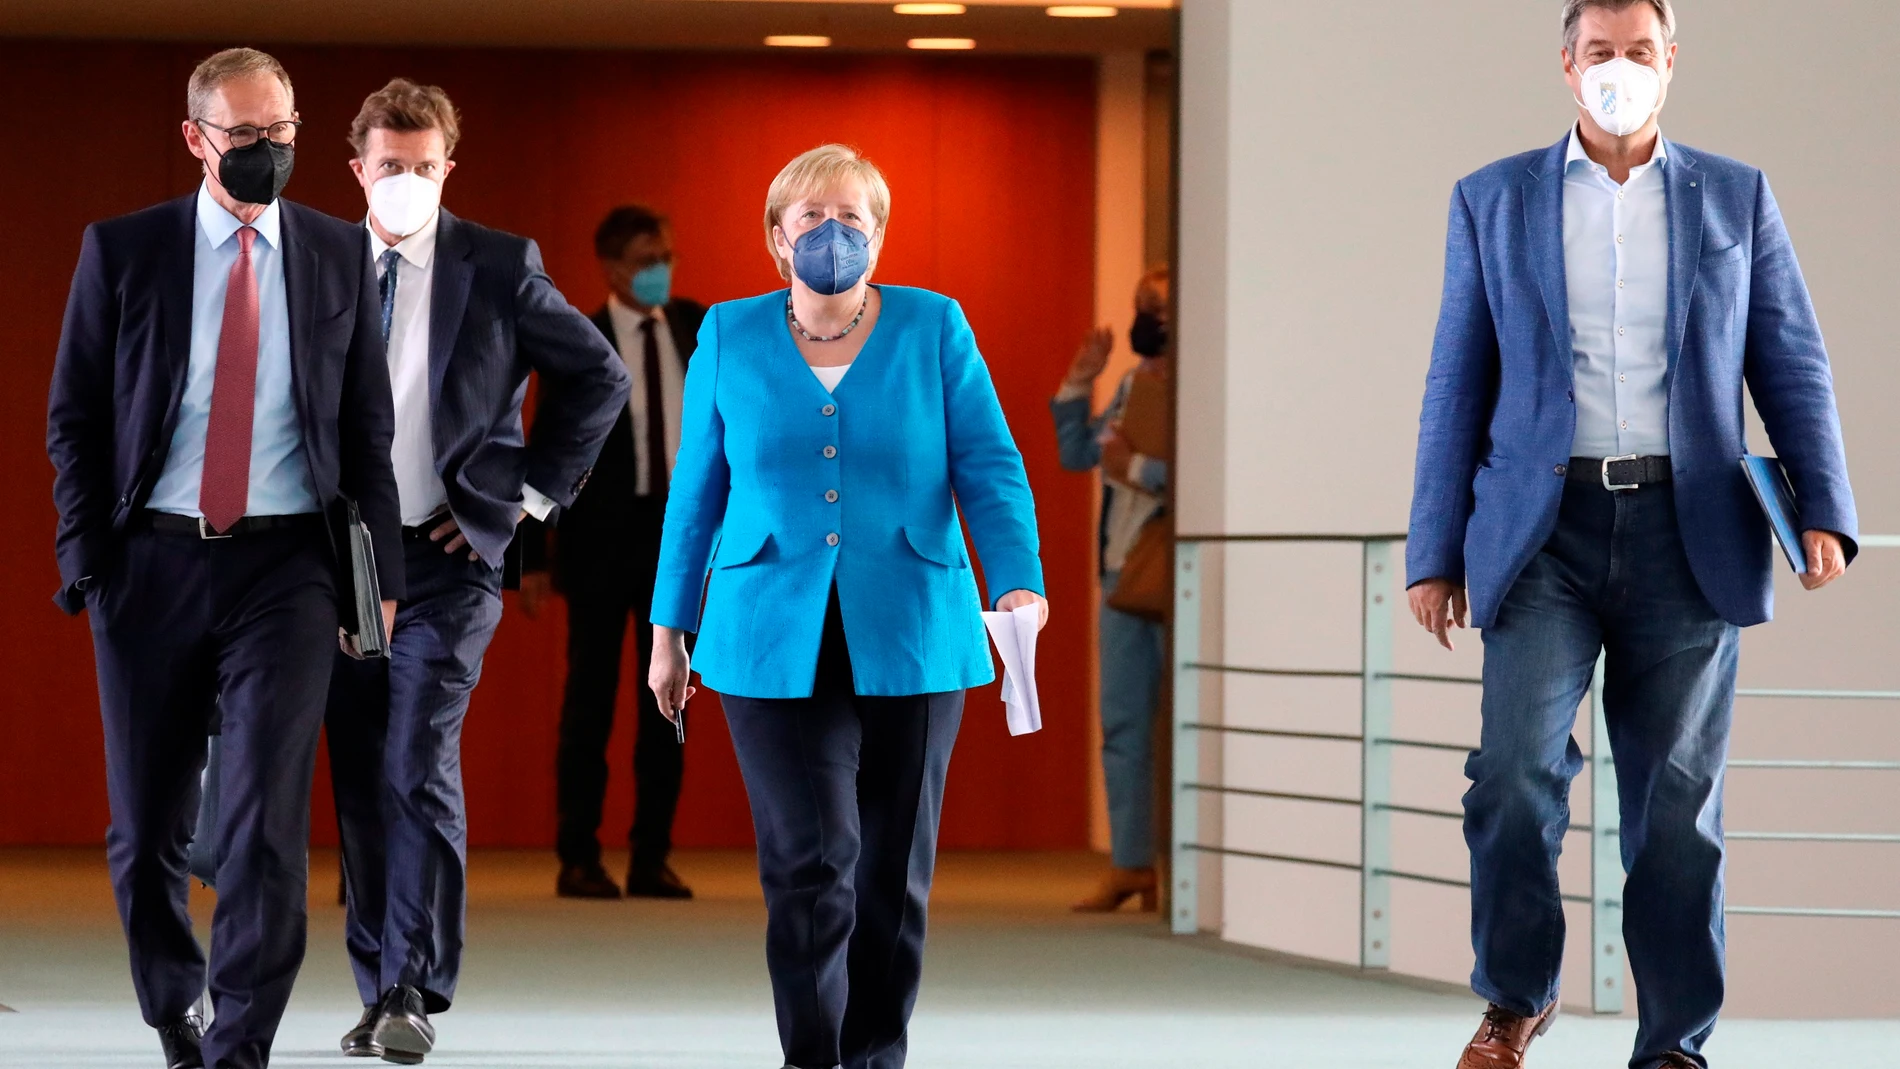 La canciller Angela Merkel se reunió ayer en Berlín con lo 16 presidentes regionales para analizar la situación de la pandemia